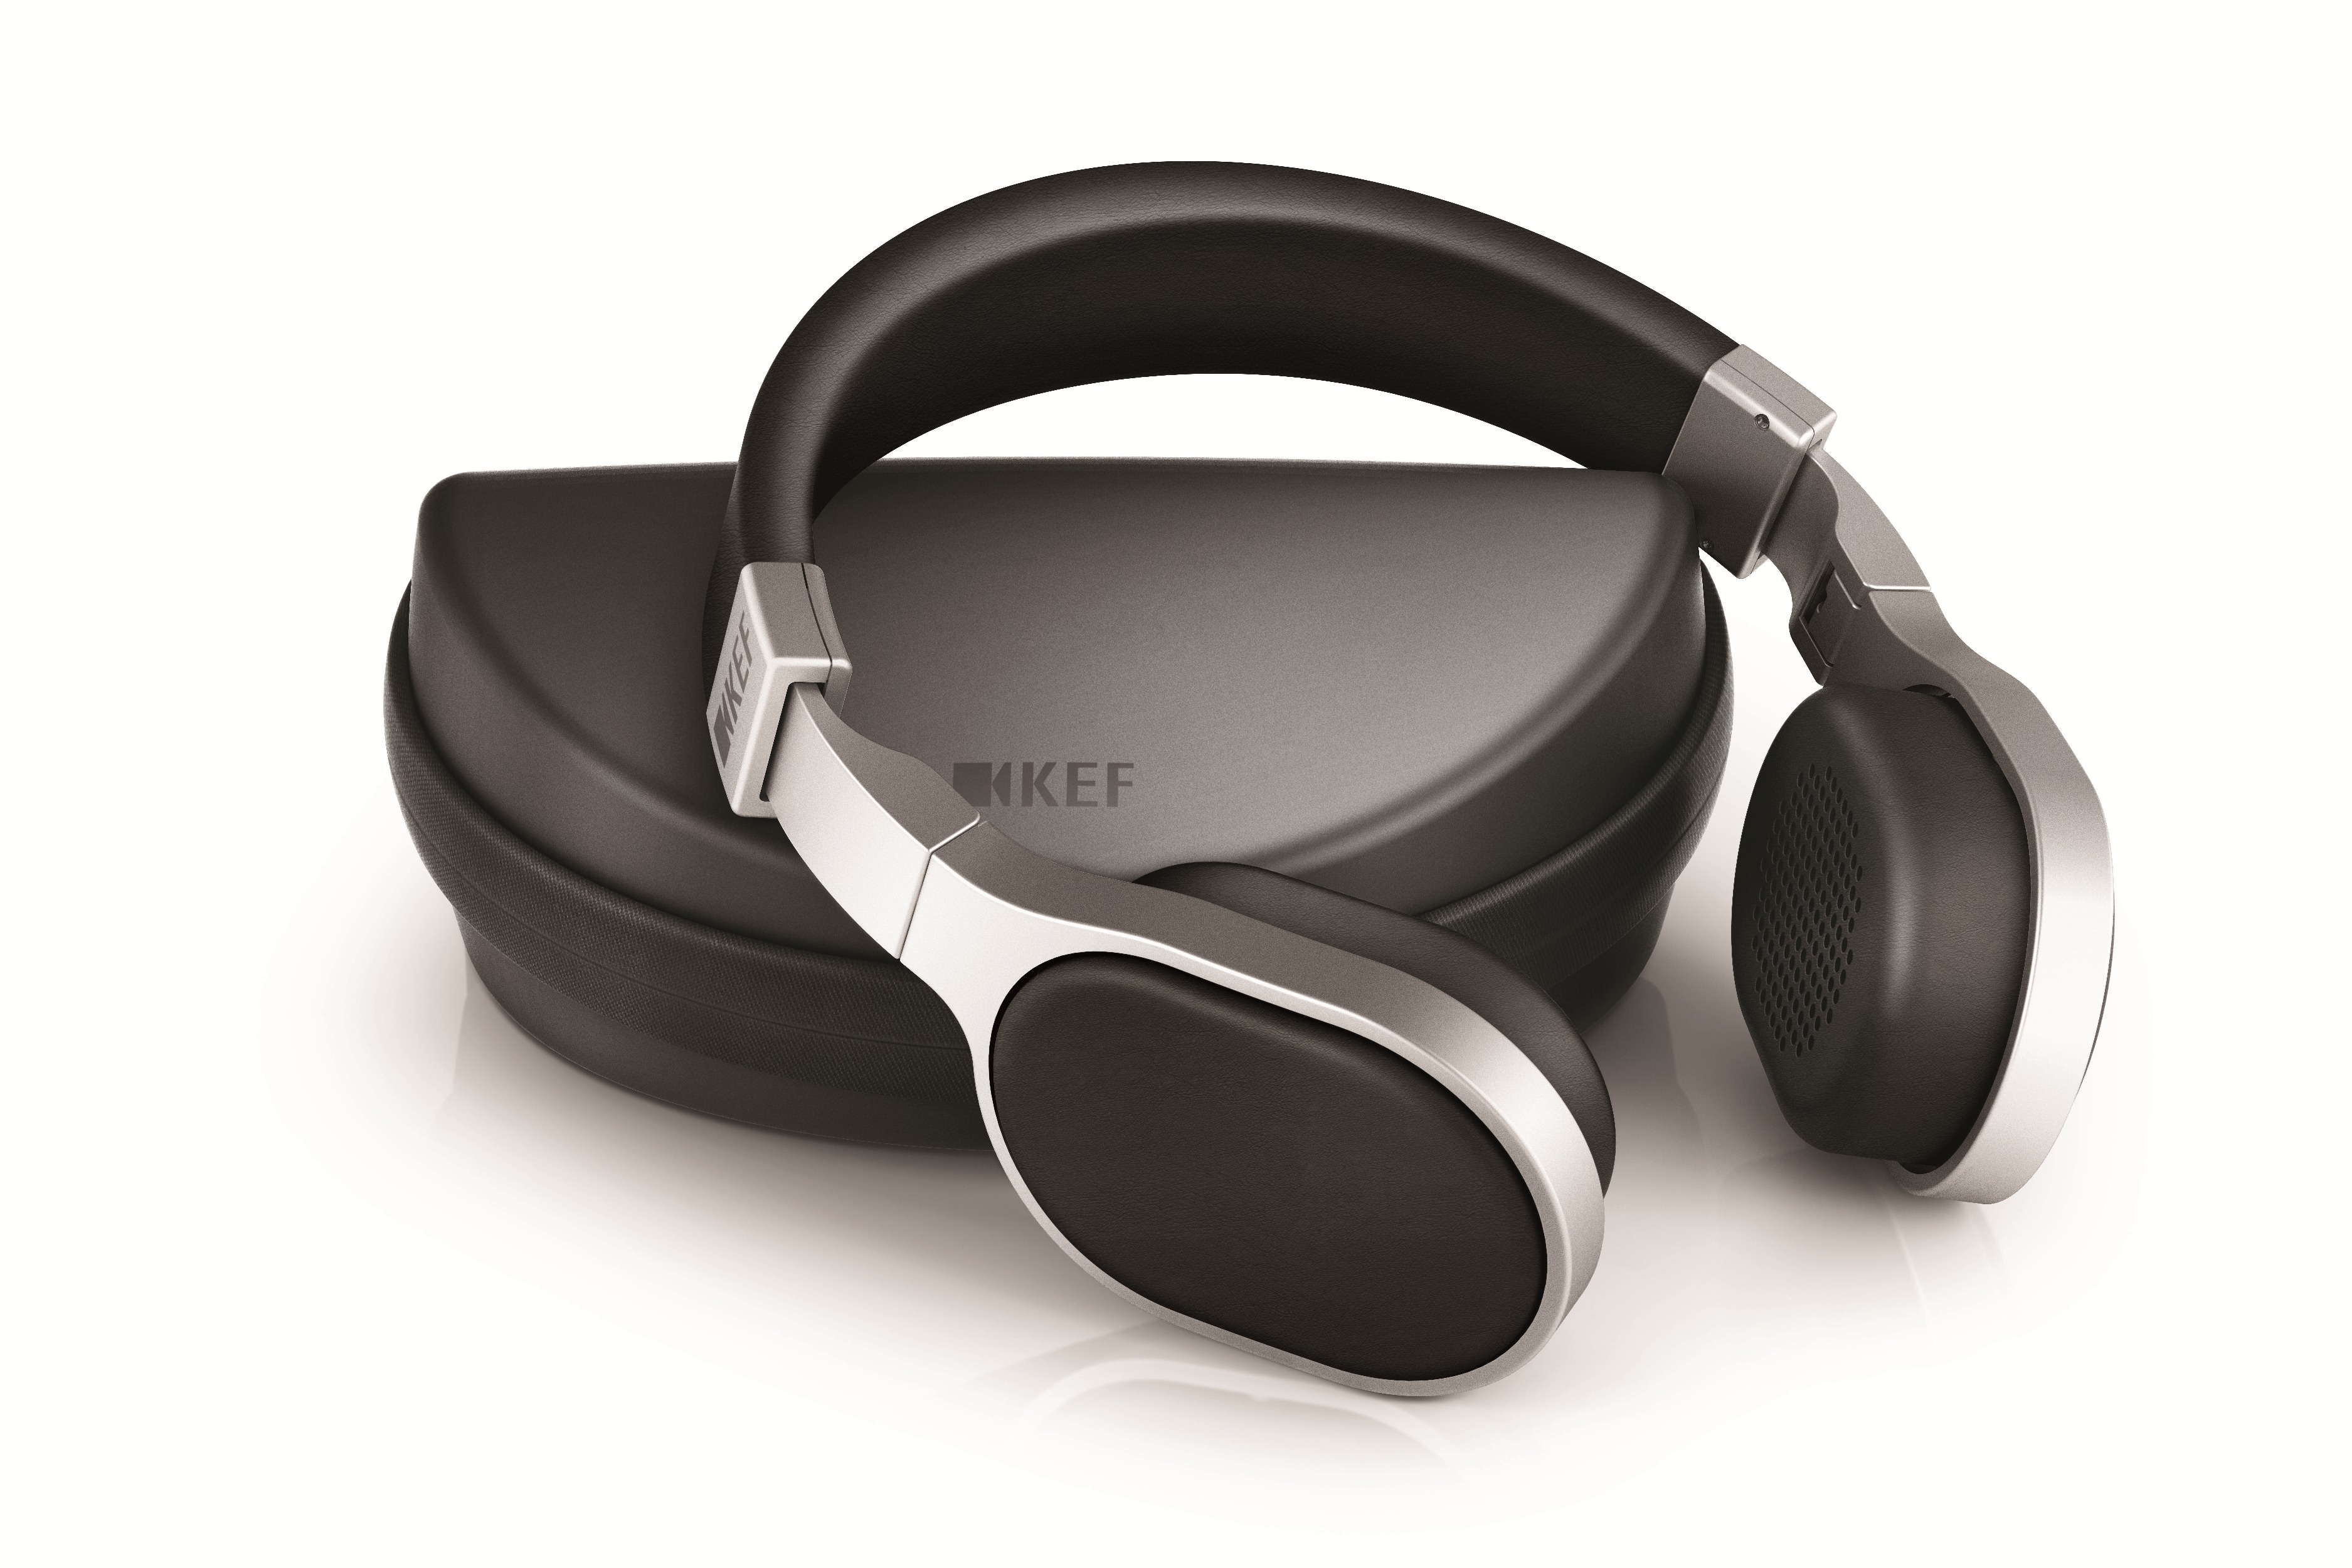 英国殿堂级音响品牌KEF隆重推出Hi-Fi耳机系列